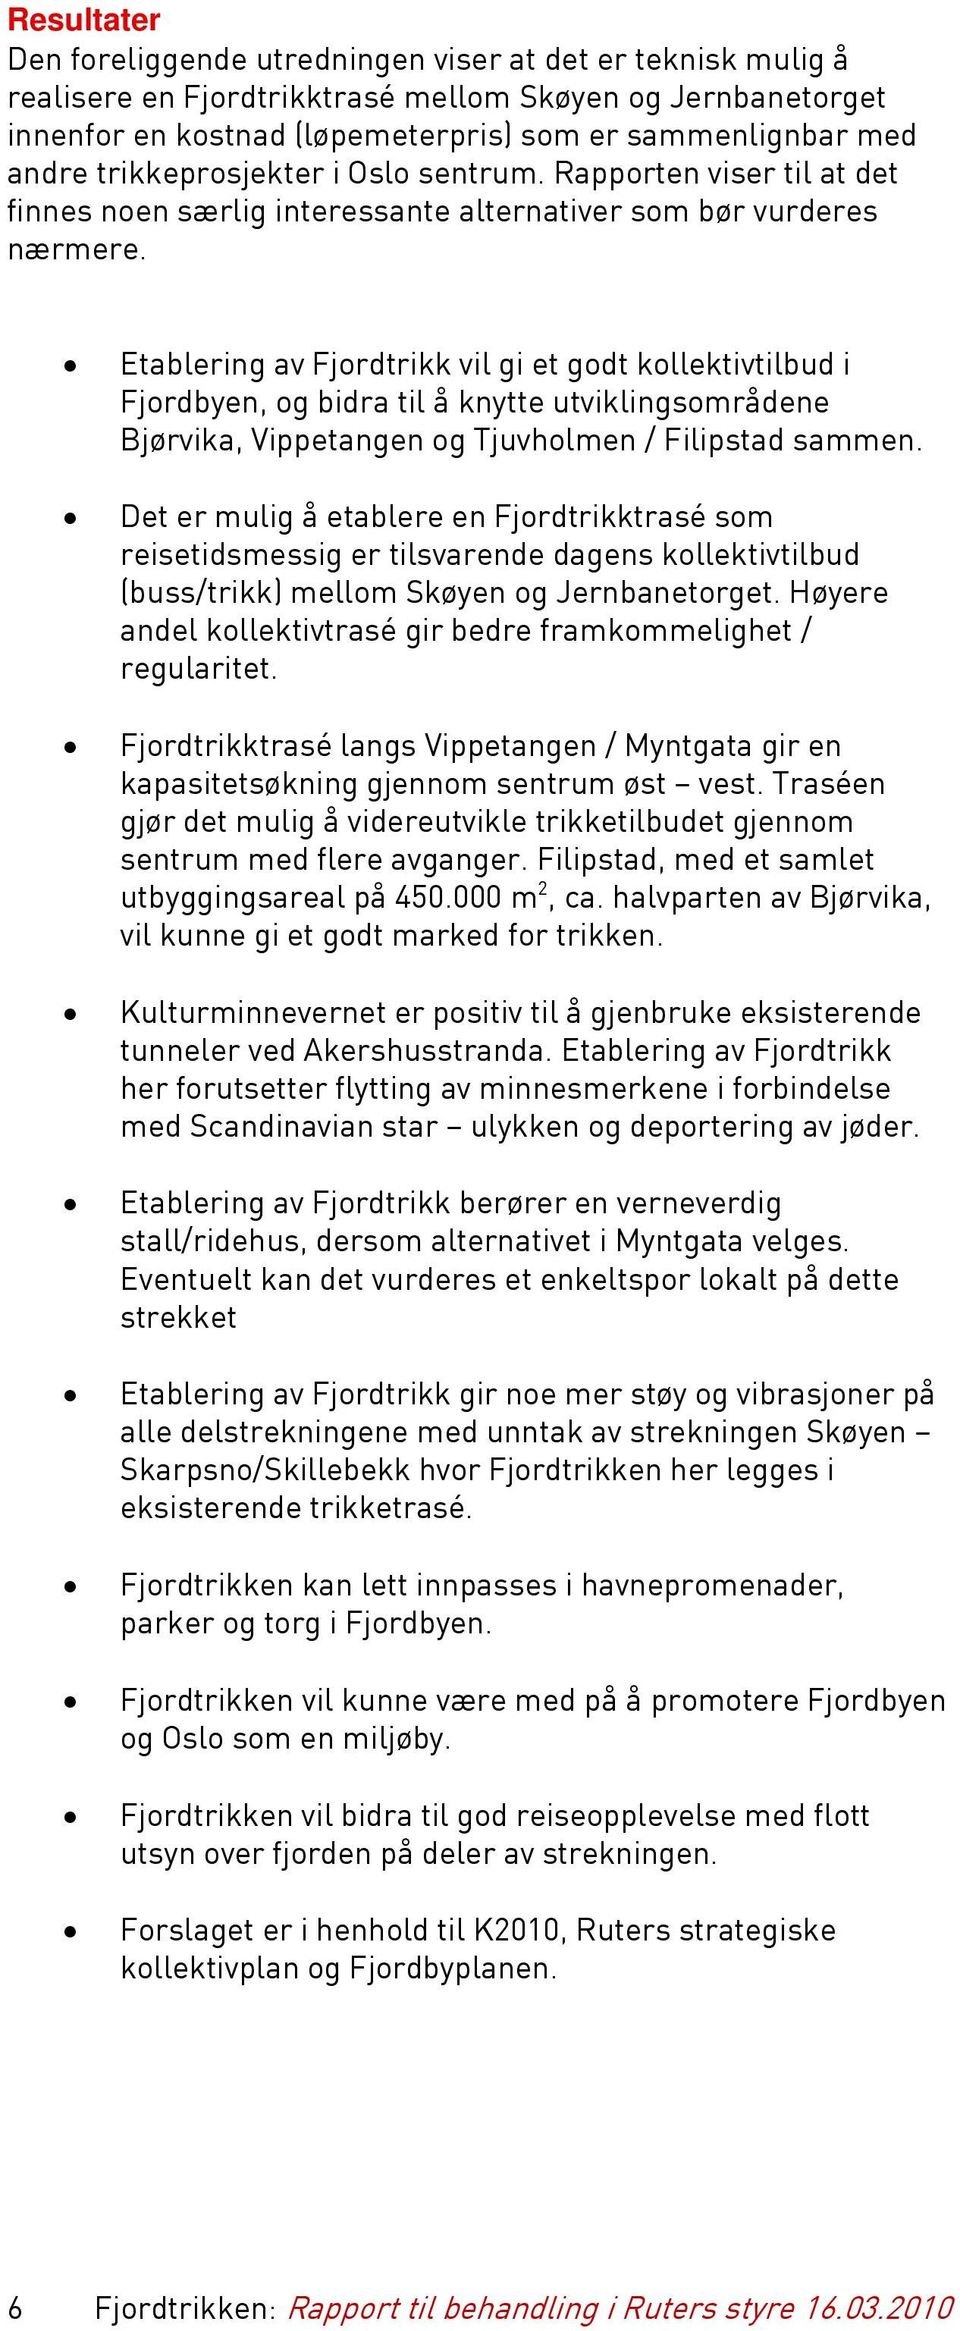 Etablering av Fjordtrikk vil gi et godt kollektivtilbud i Fjordbyen, og bidra til å knytte utviklingsområdene Bjørvika, Vippetangen og Tjuvholmen / Filipstad sammen.